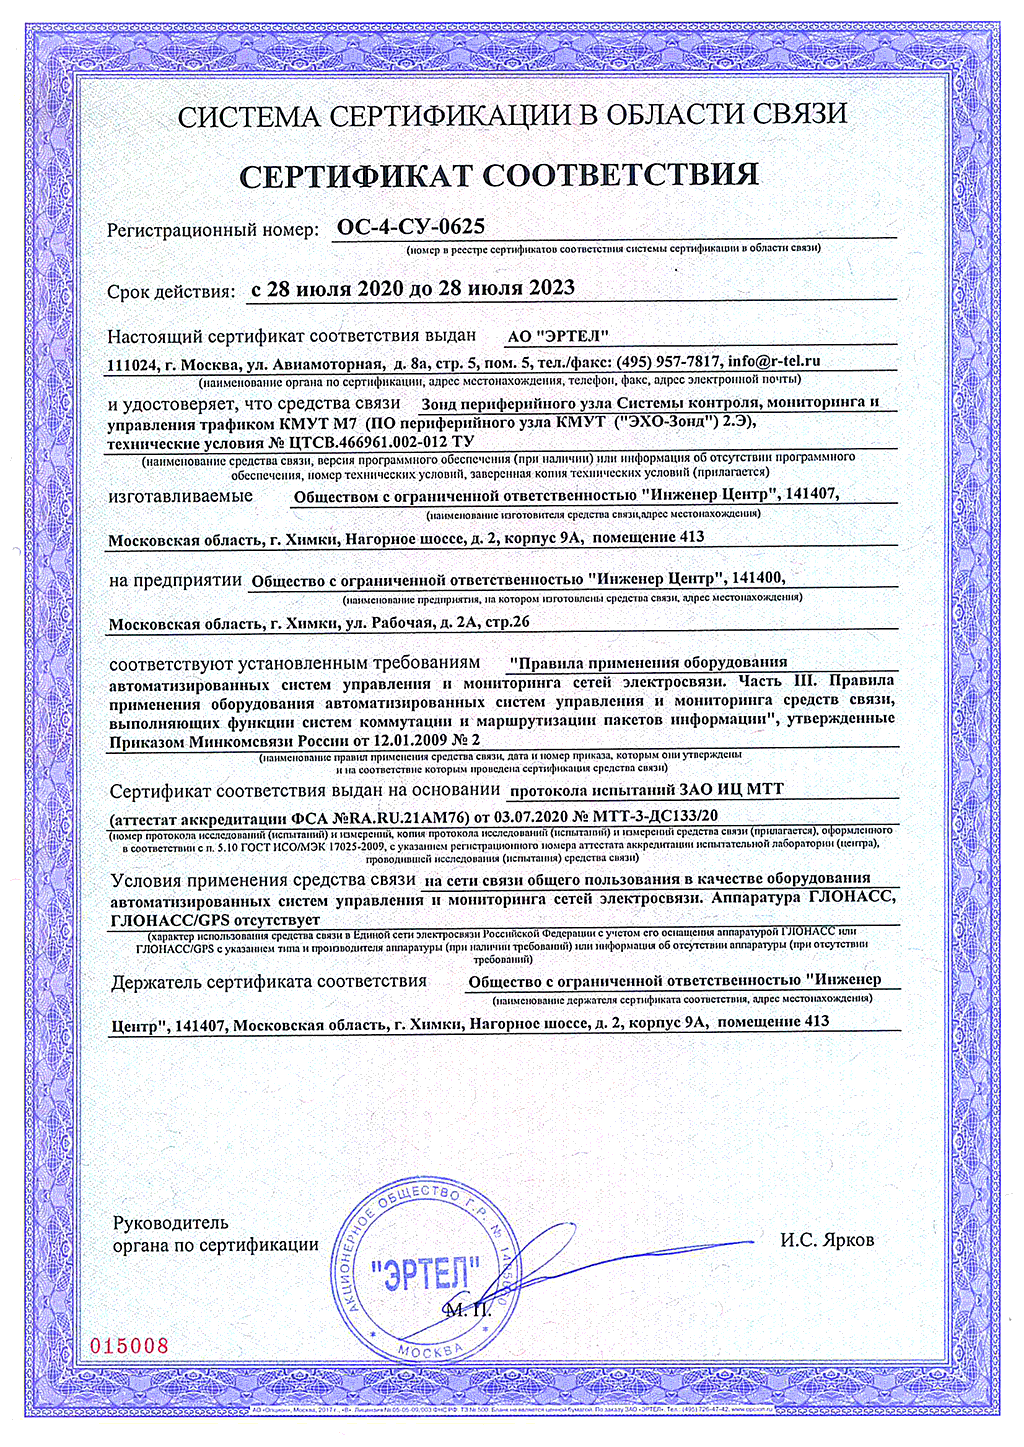 сертификат соответствия ОС-4-СУ-0625